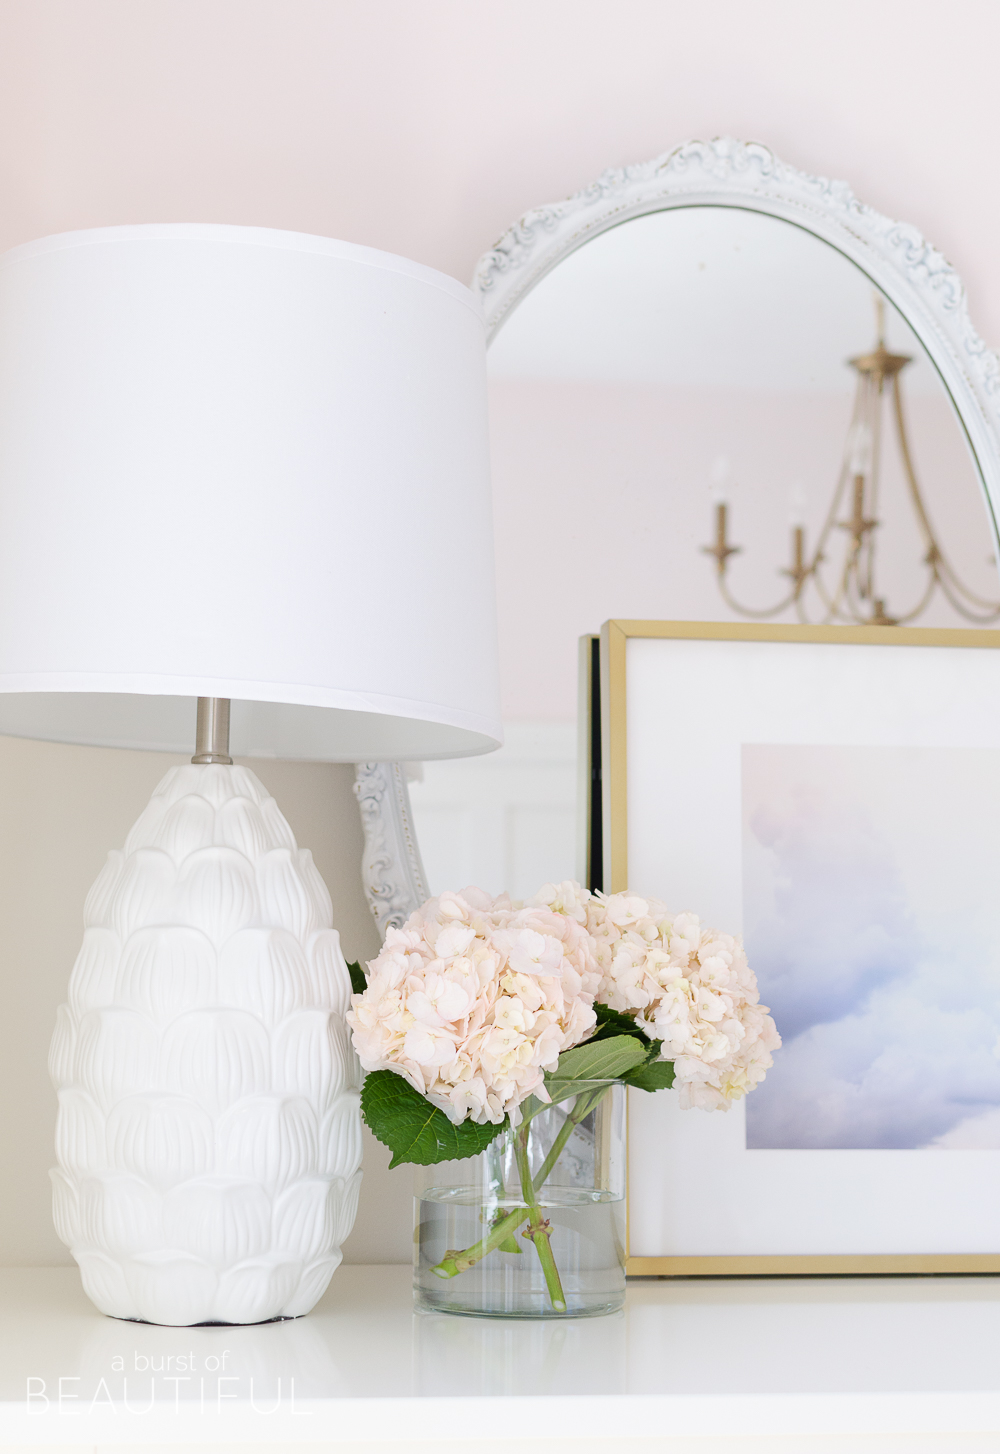 Toddler Girl Pink Bedroom Design & Decor Idea dresser tabletop decor